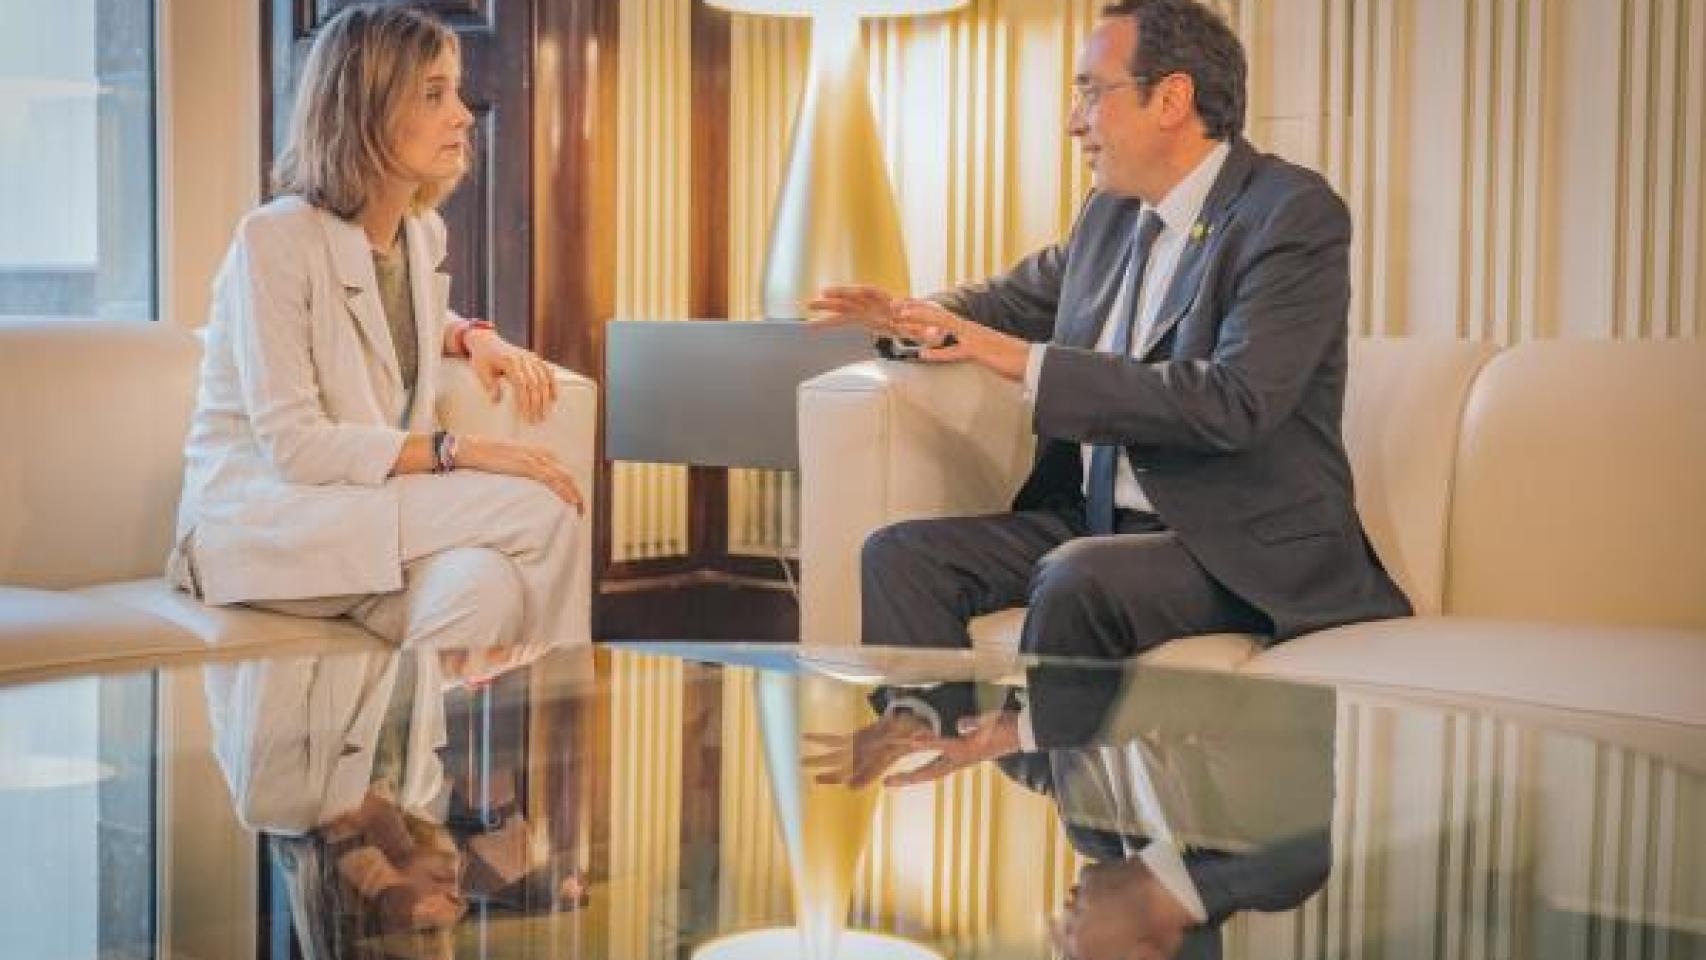 La líder de Comuns Jéssica Albiach se reúne con el presidente del Parlament Josep Rull